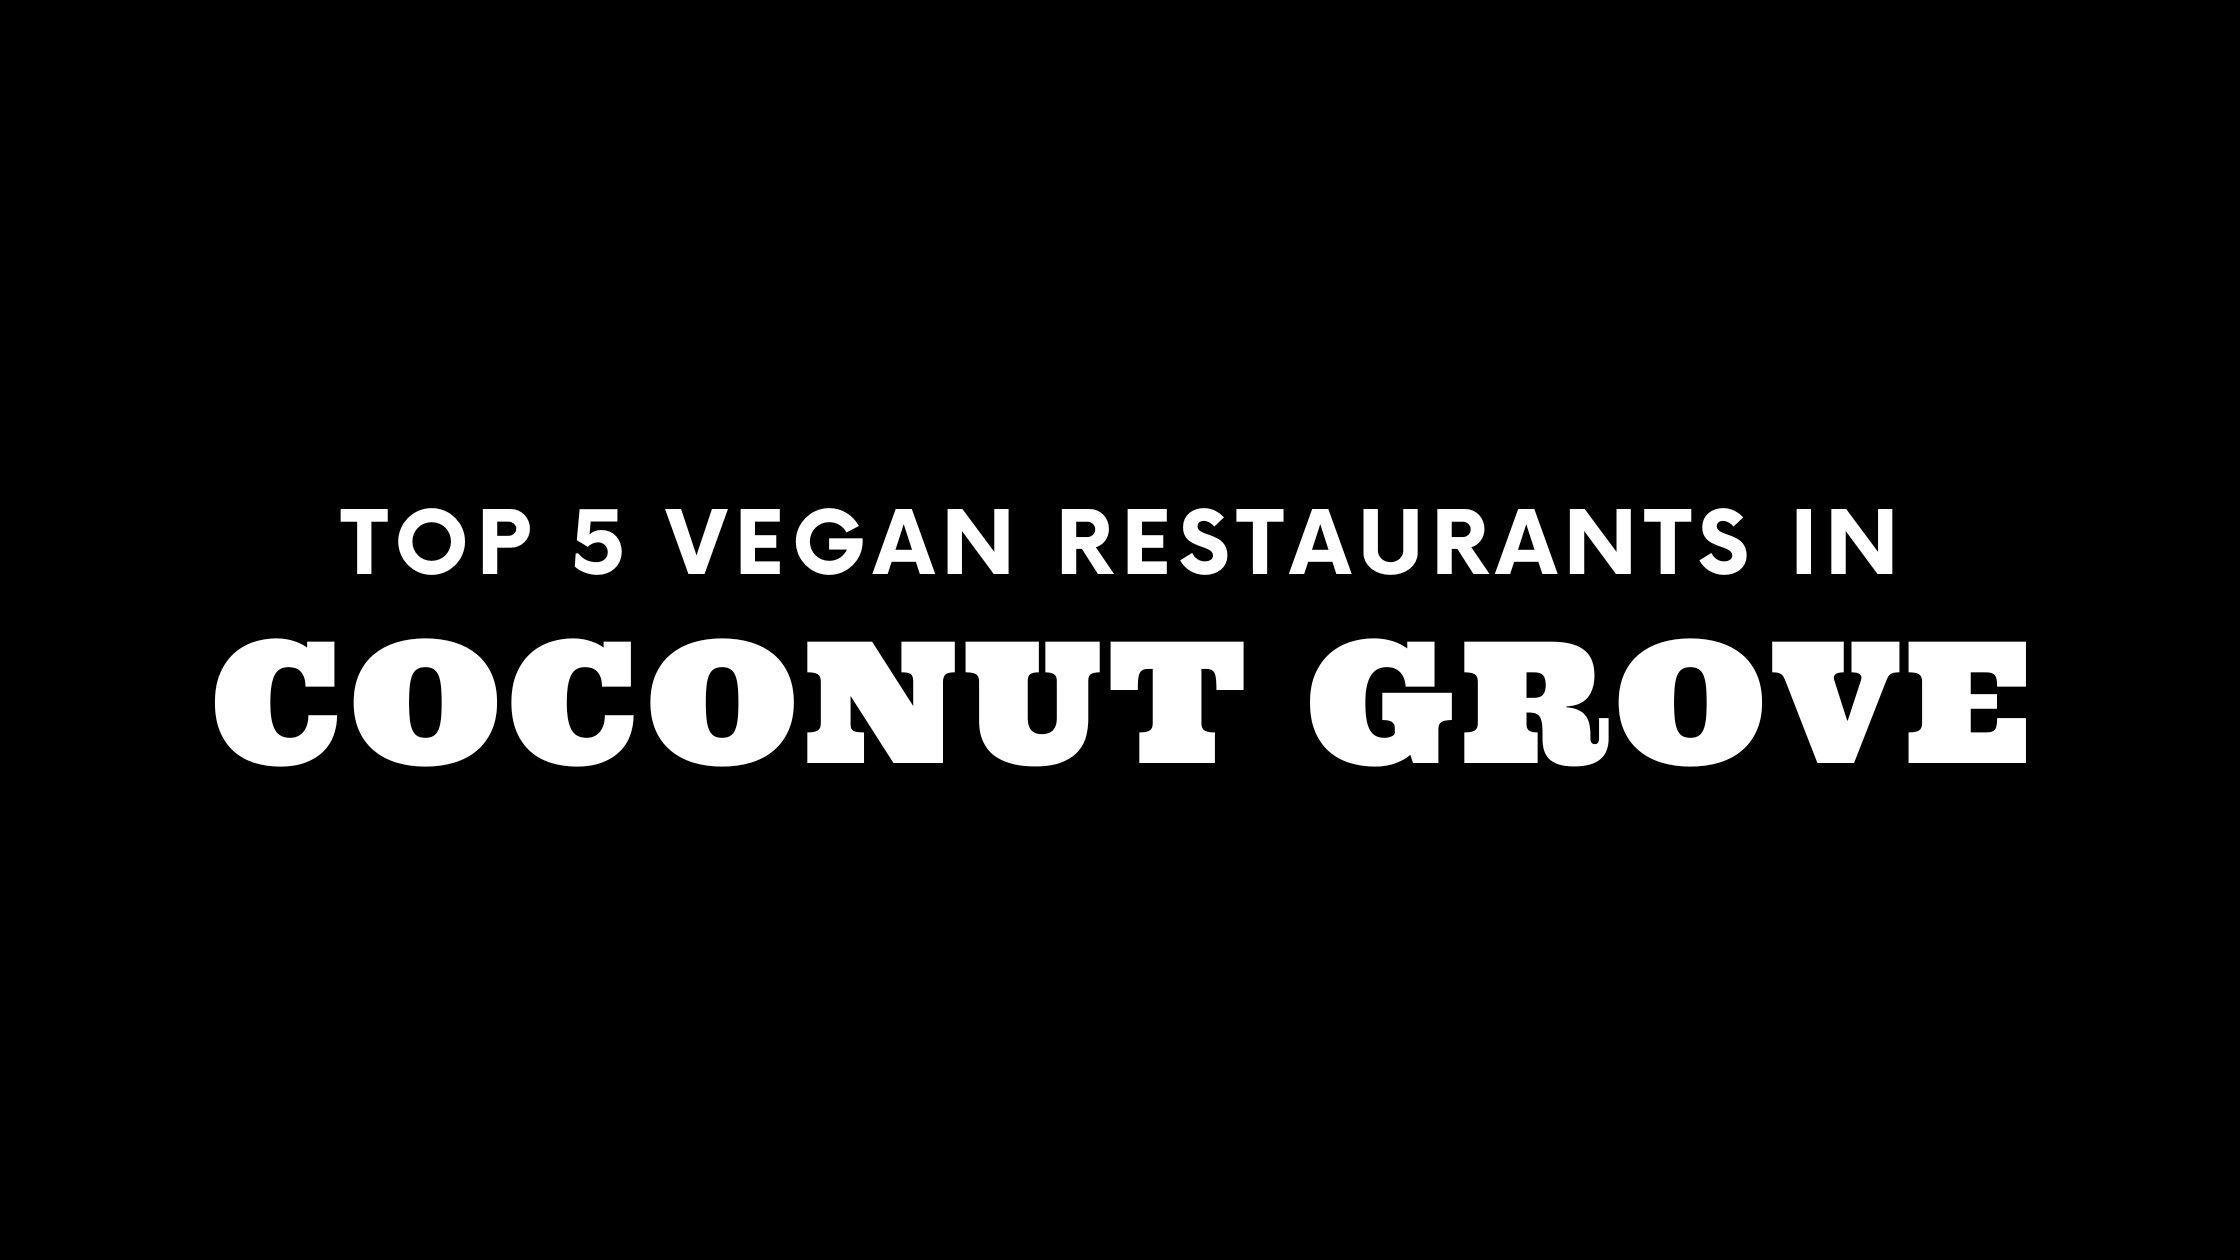 Top 5 Vegan Restaurants in Coconut Grove